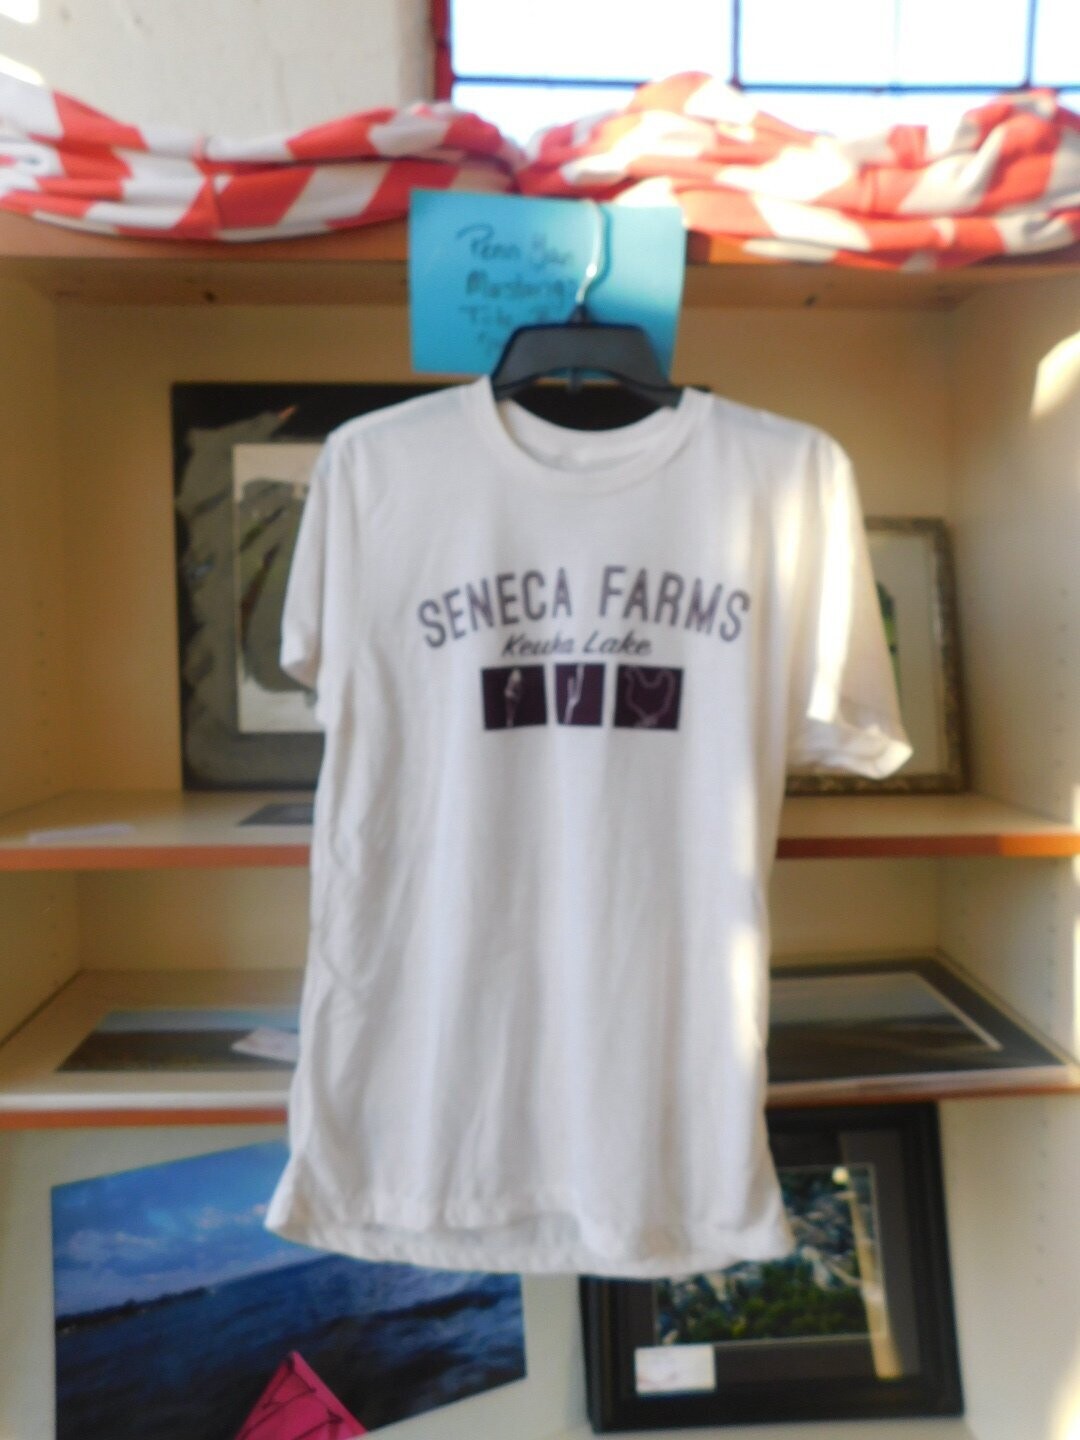 Seneca Farms, Keuka Lake White Tee